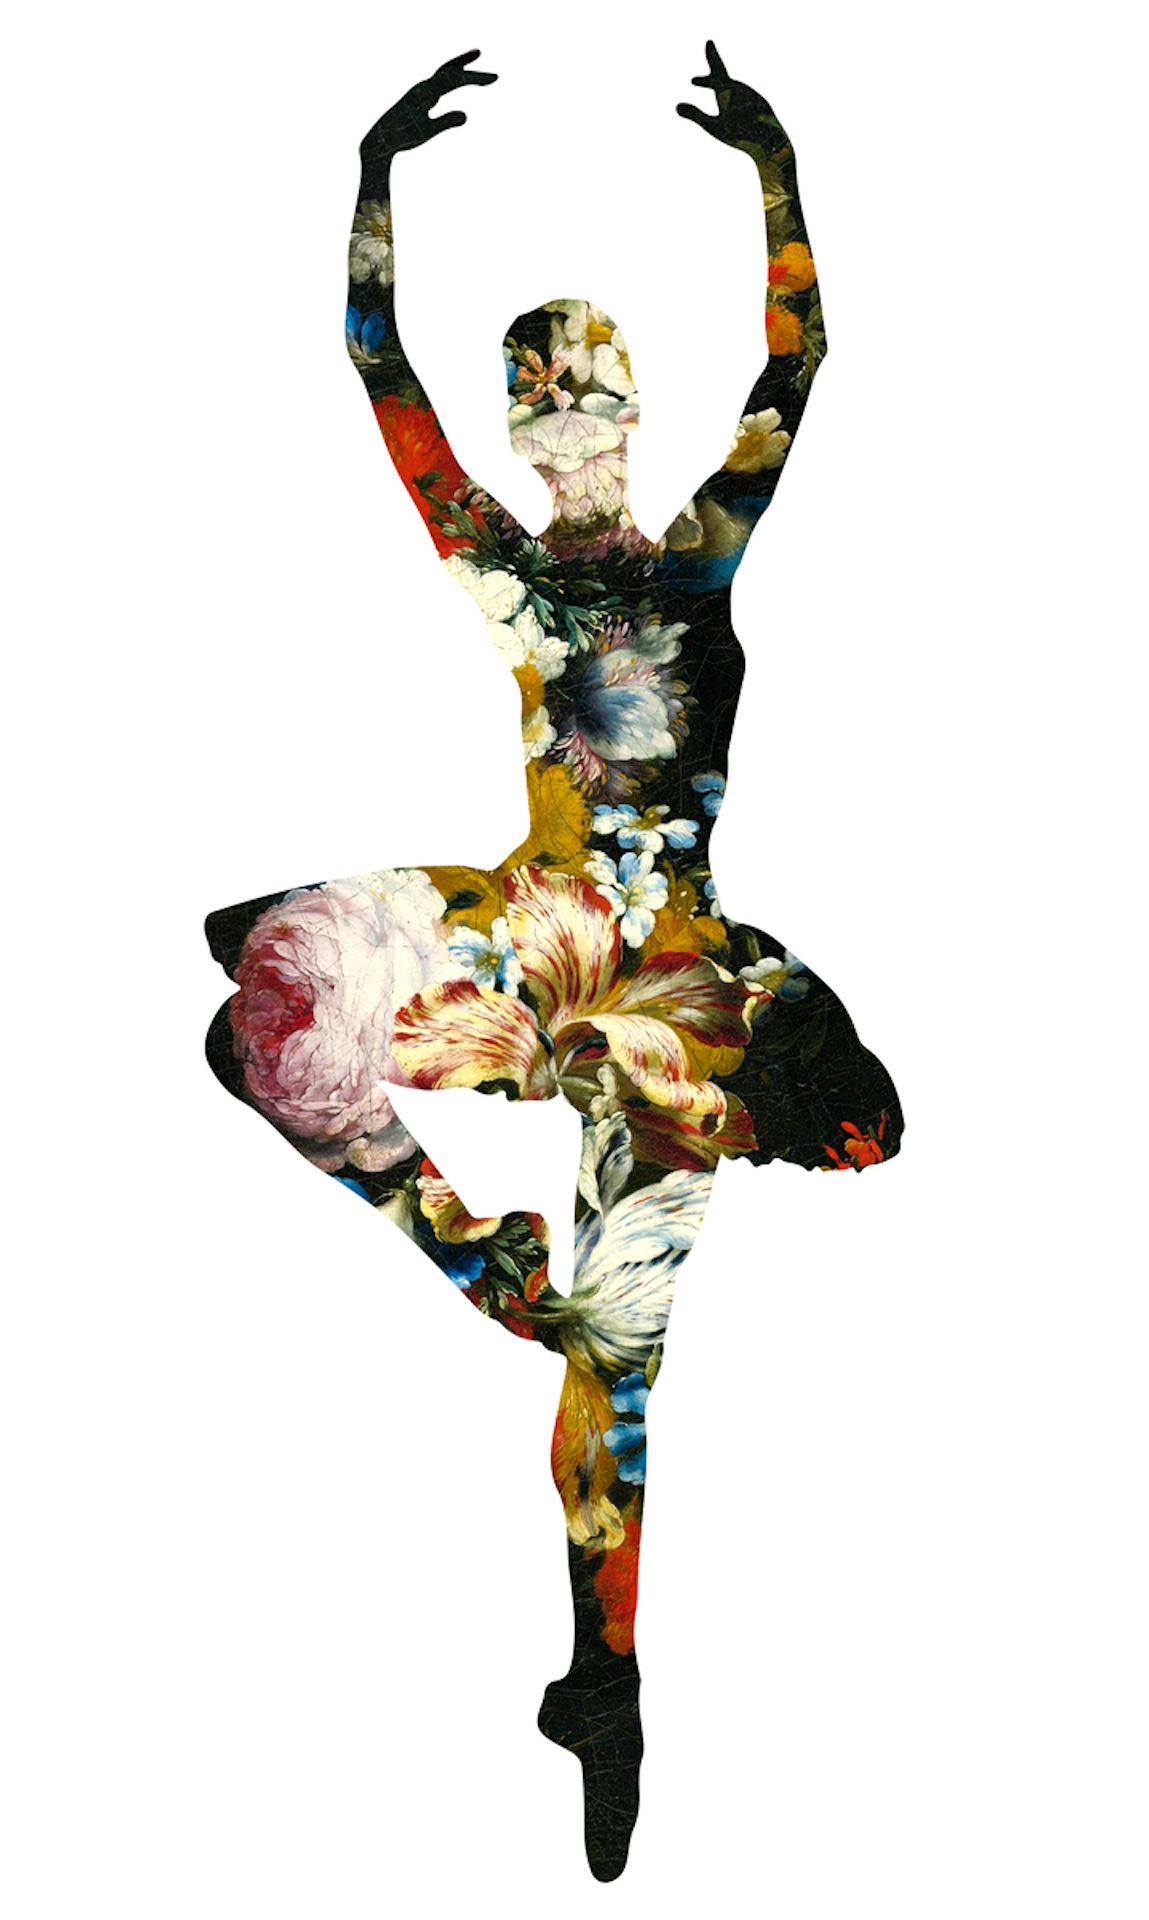 En Dedans Pirouette Avec Les Fleurs (weiß)" zeigt die Silhouette einer Balletttänzerin, die mitten in einer Pirouette gefangen ist. Wie aus dem reinen Weiß herausgeschnitten, erzeugt Agent X die Illusion eines Ausschnitts, um ein barockes, florales